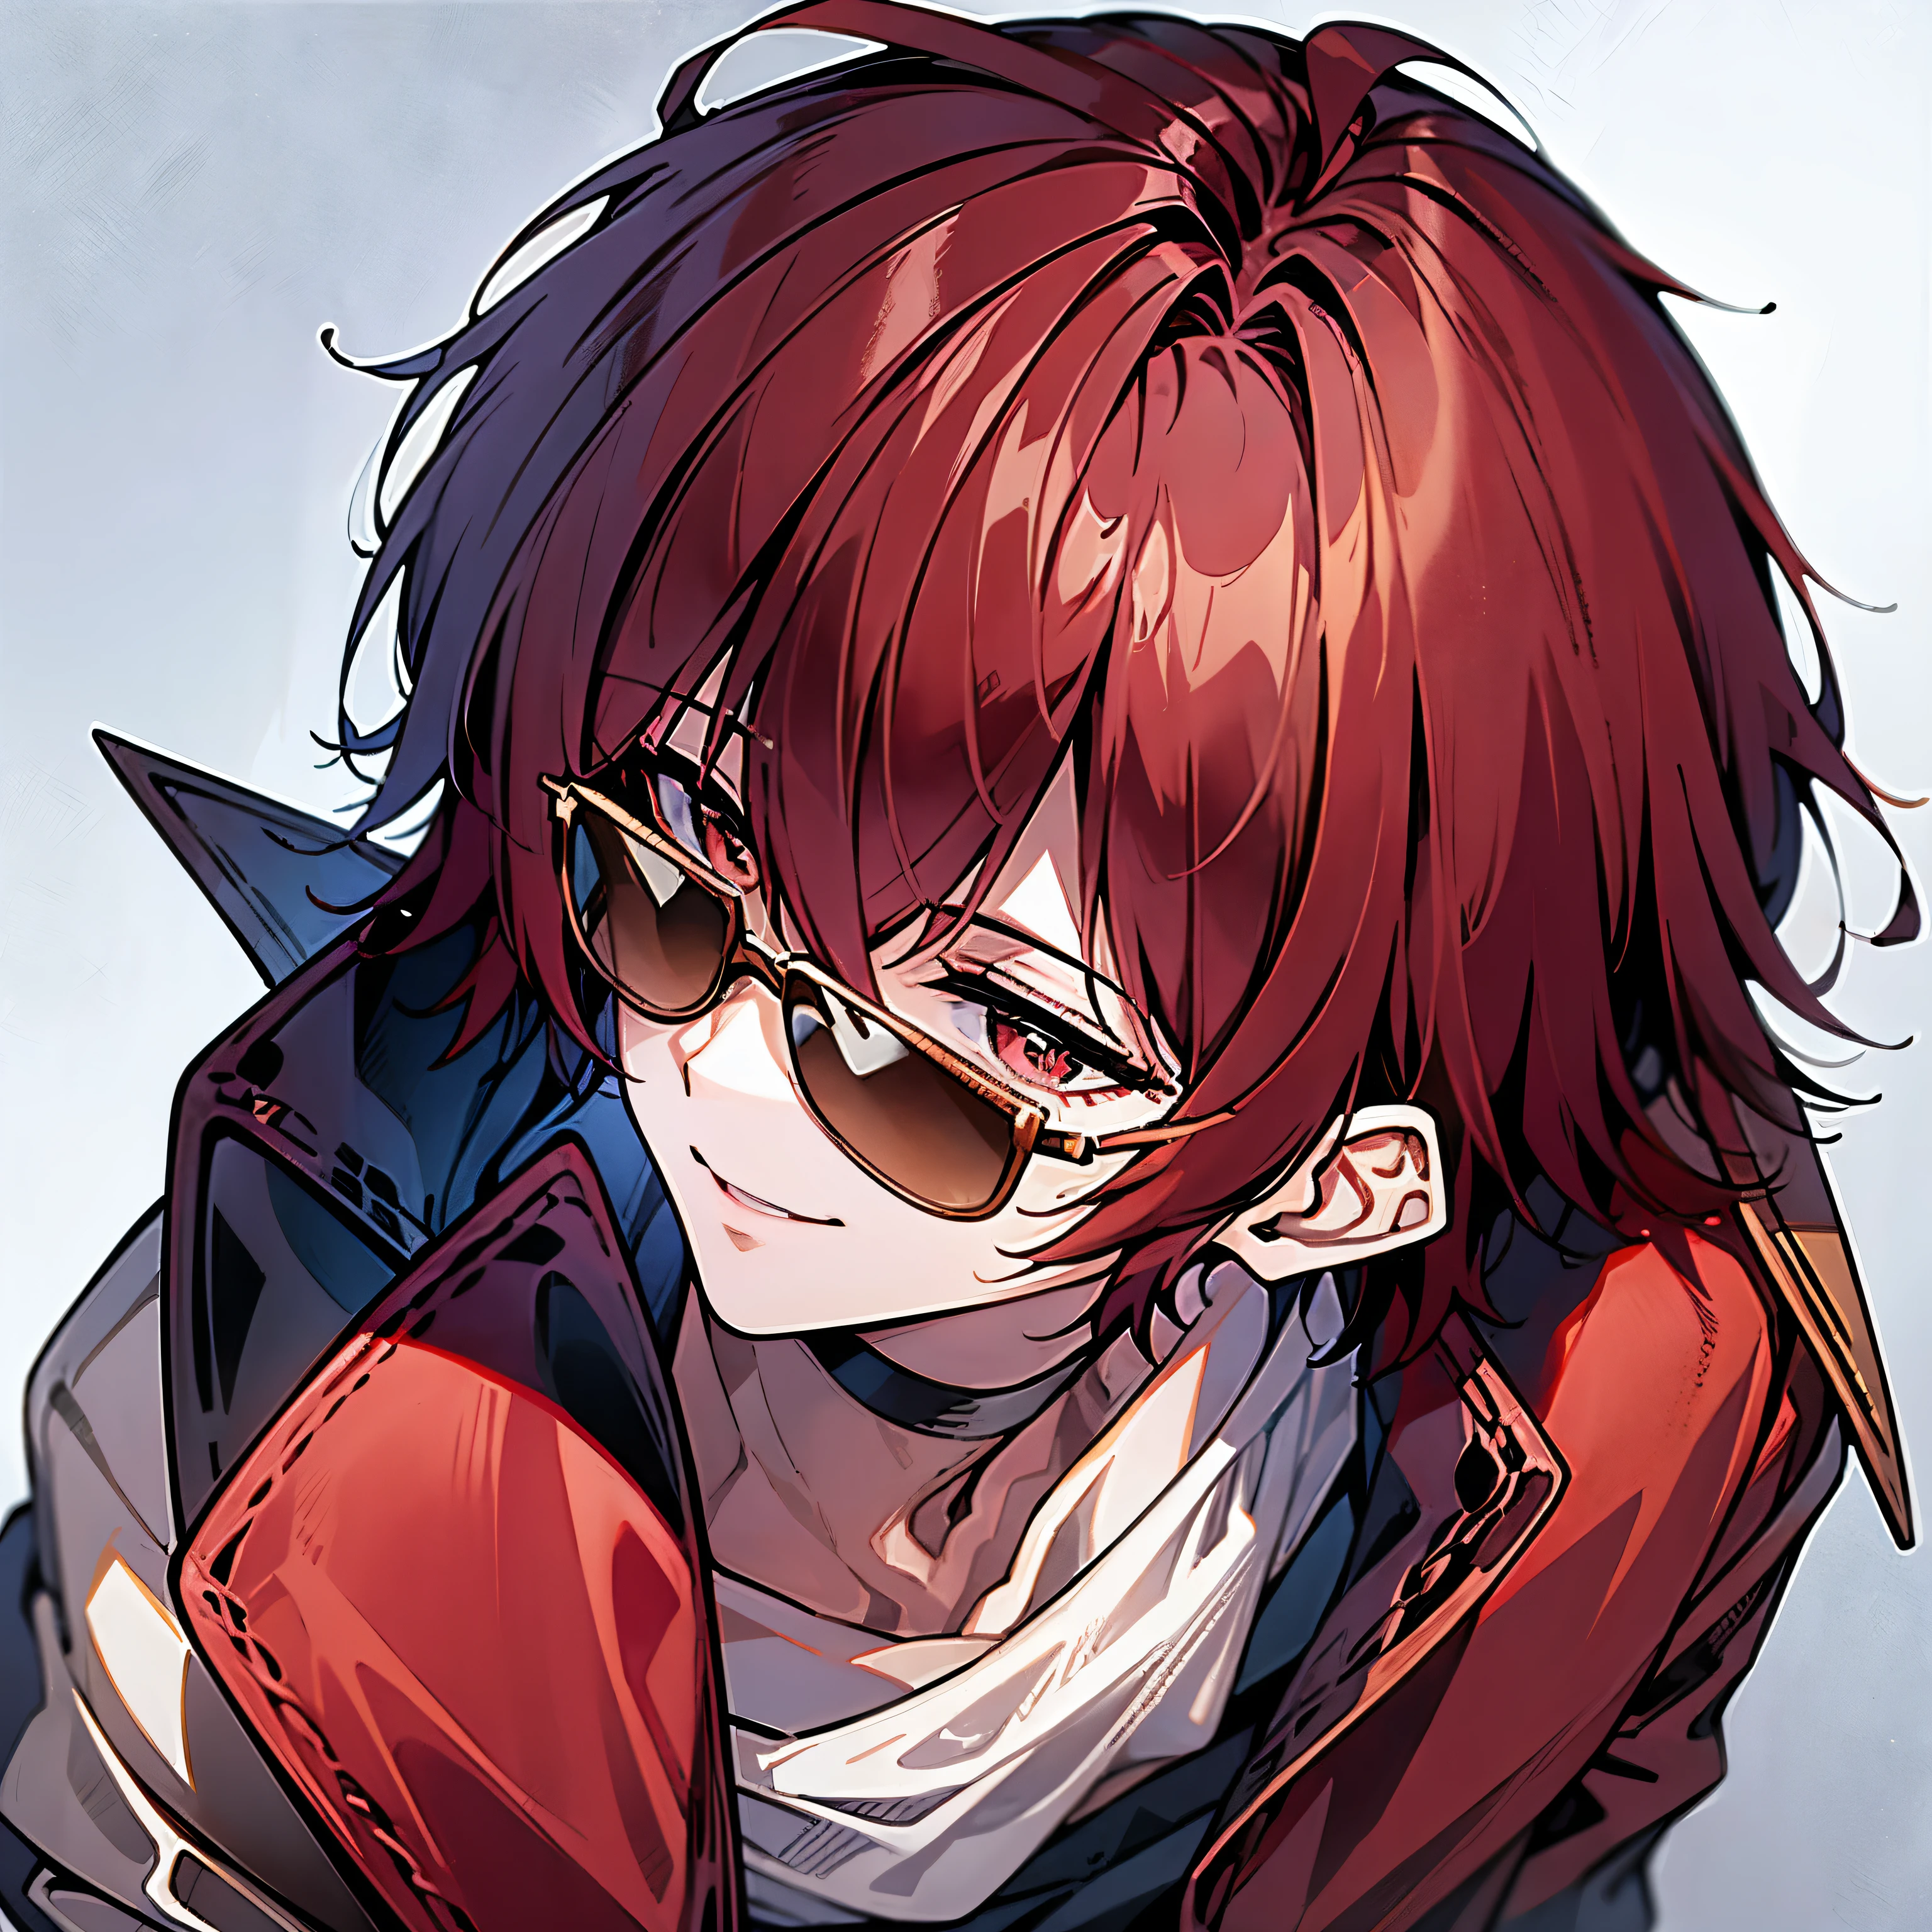 Un hombre con pelo rojo, sonriendo con gafas de sol encima de la cabeza, usando una chaqueta morada